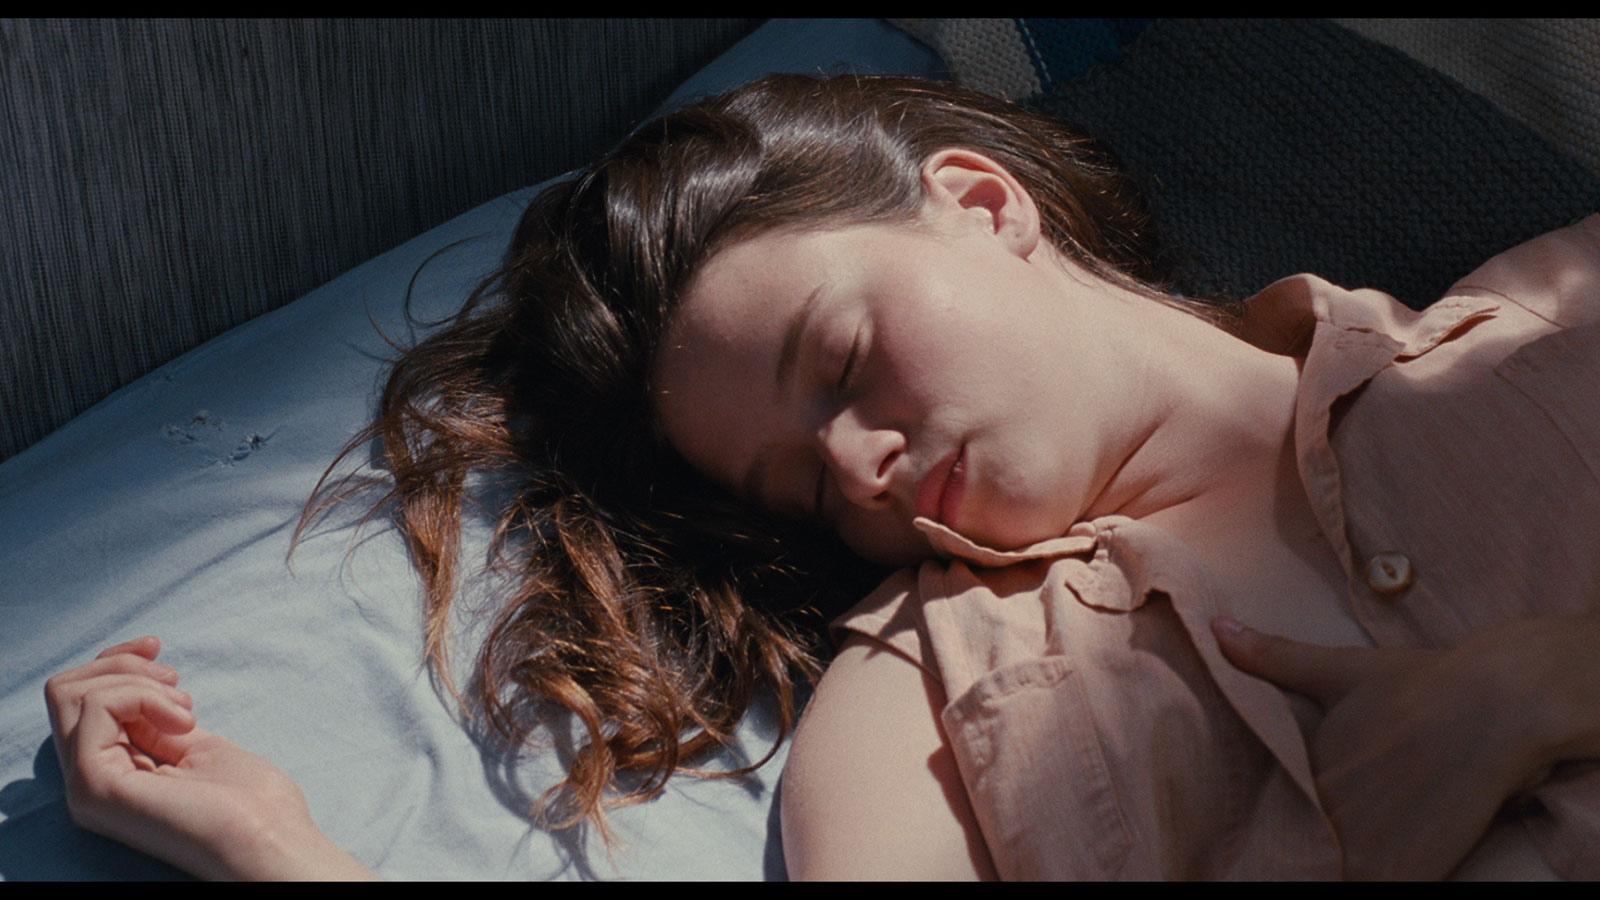 //www.occitanie-films.netJeune fille assoupie sur un lit au drap blanc